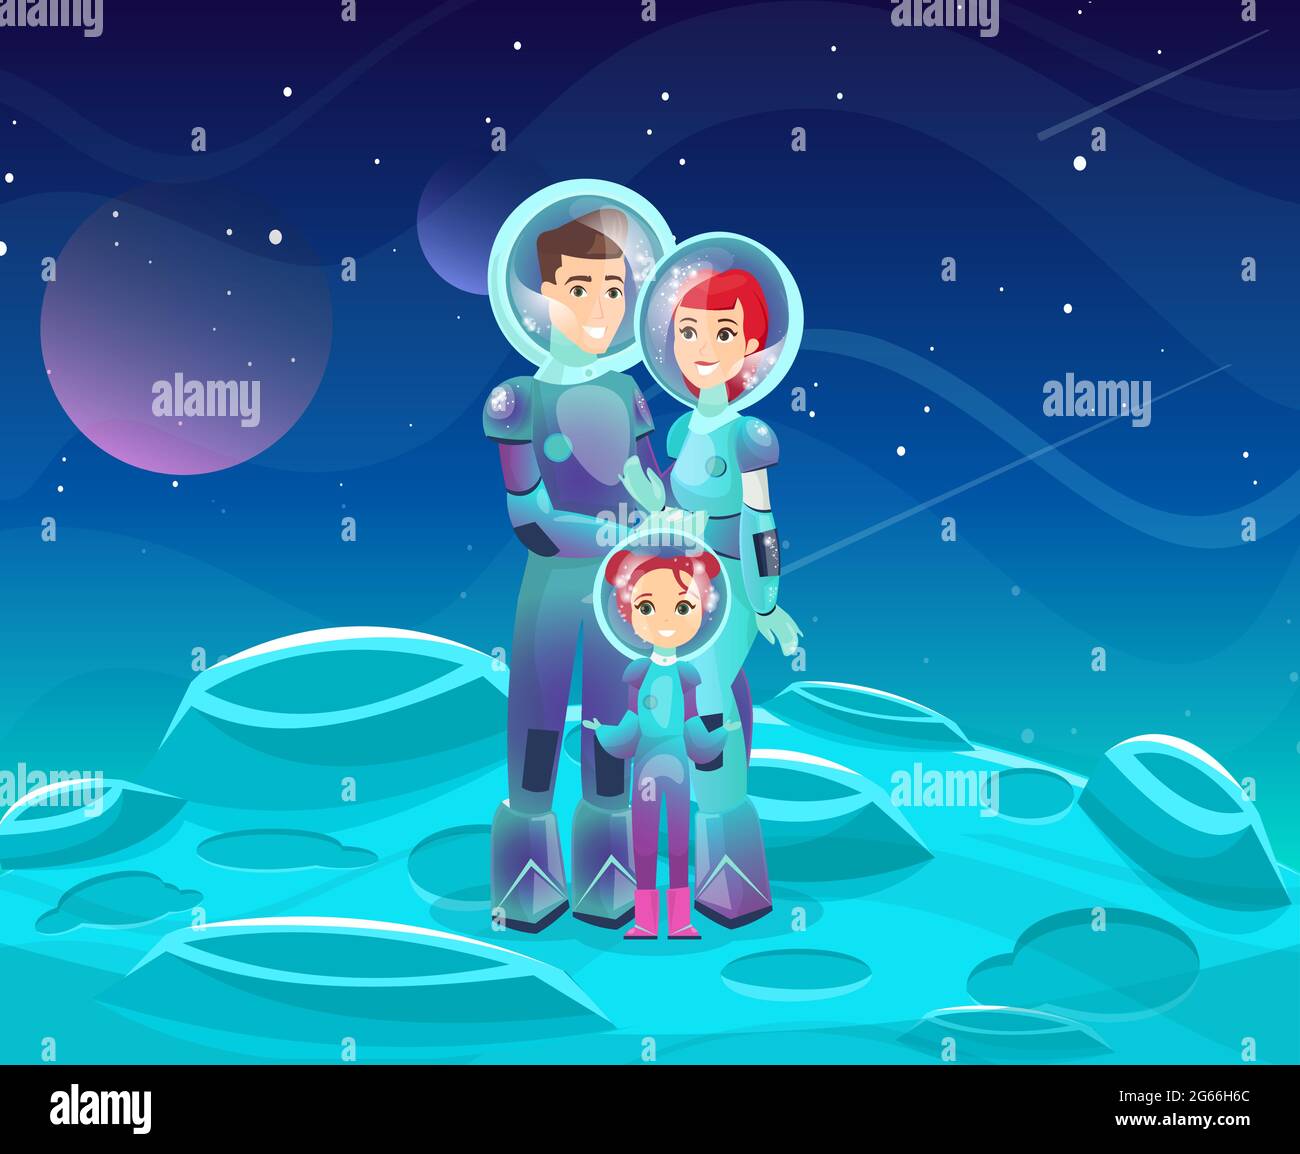 Illustration vectorielle plate de la famille des astronautes. Personnages de dessins animés joyeux pour la mère, le père et la fille. Couple heureux avec enfant sur l'aventure cosmique. Espace Illustration de Vecteur